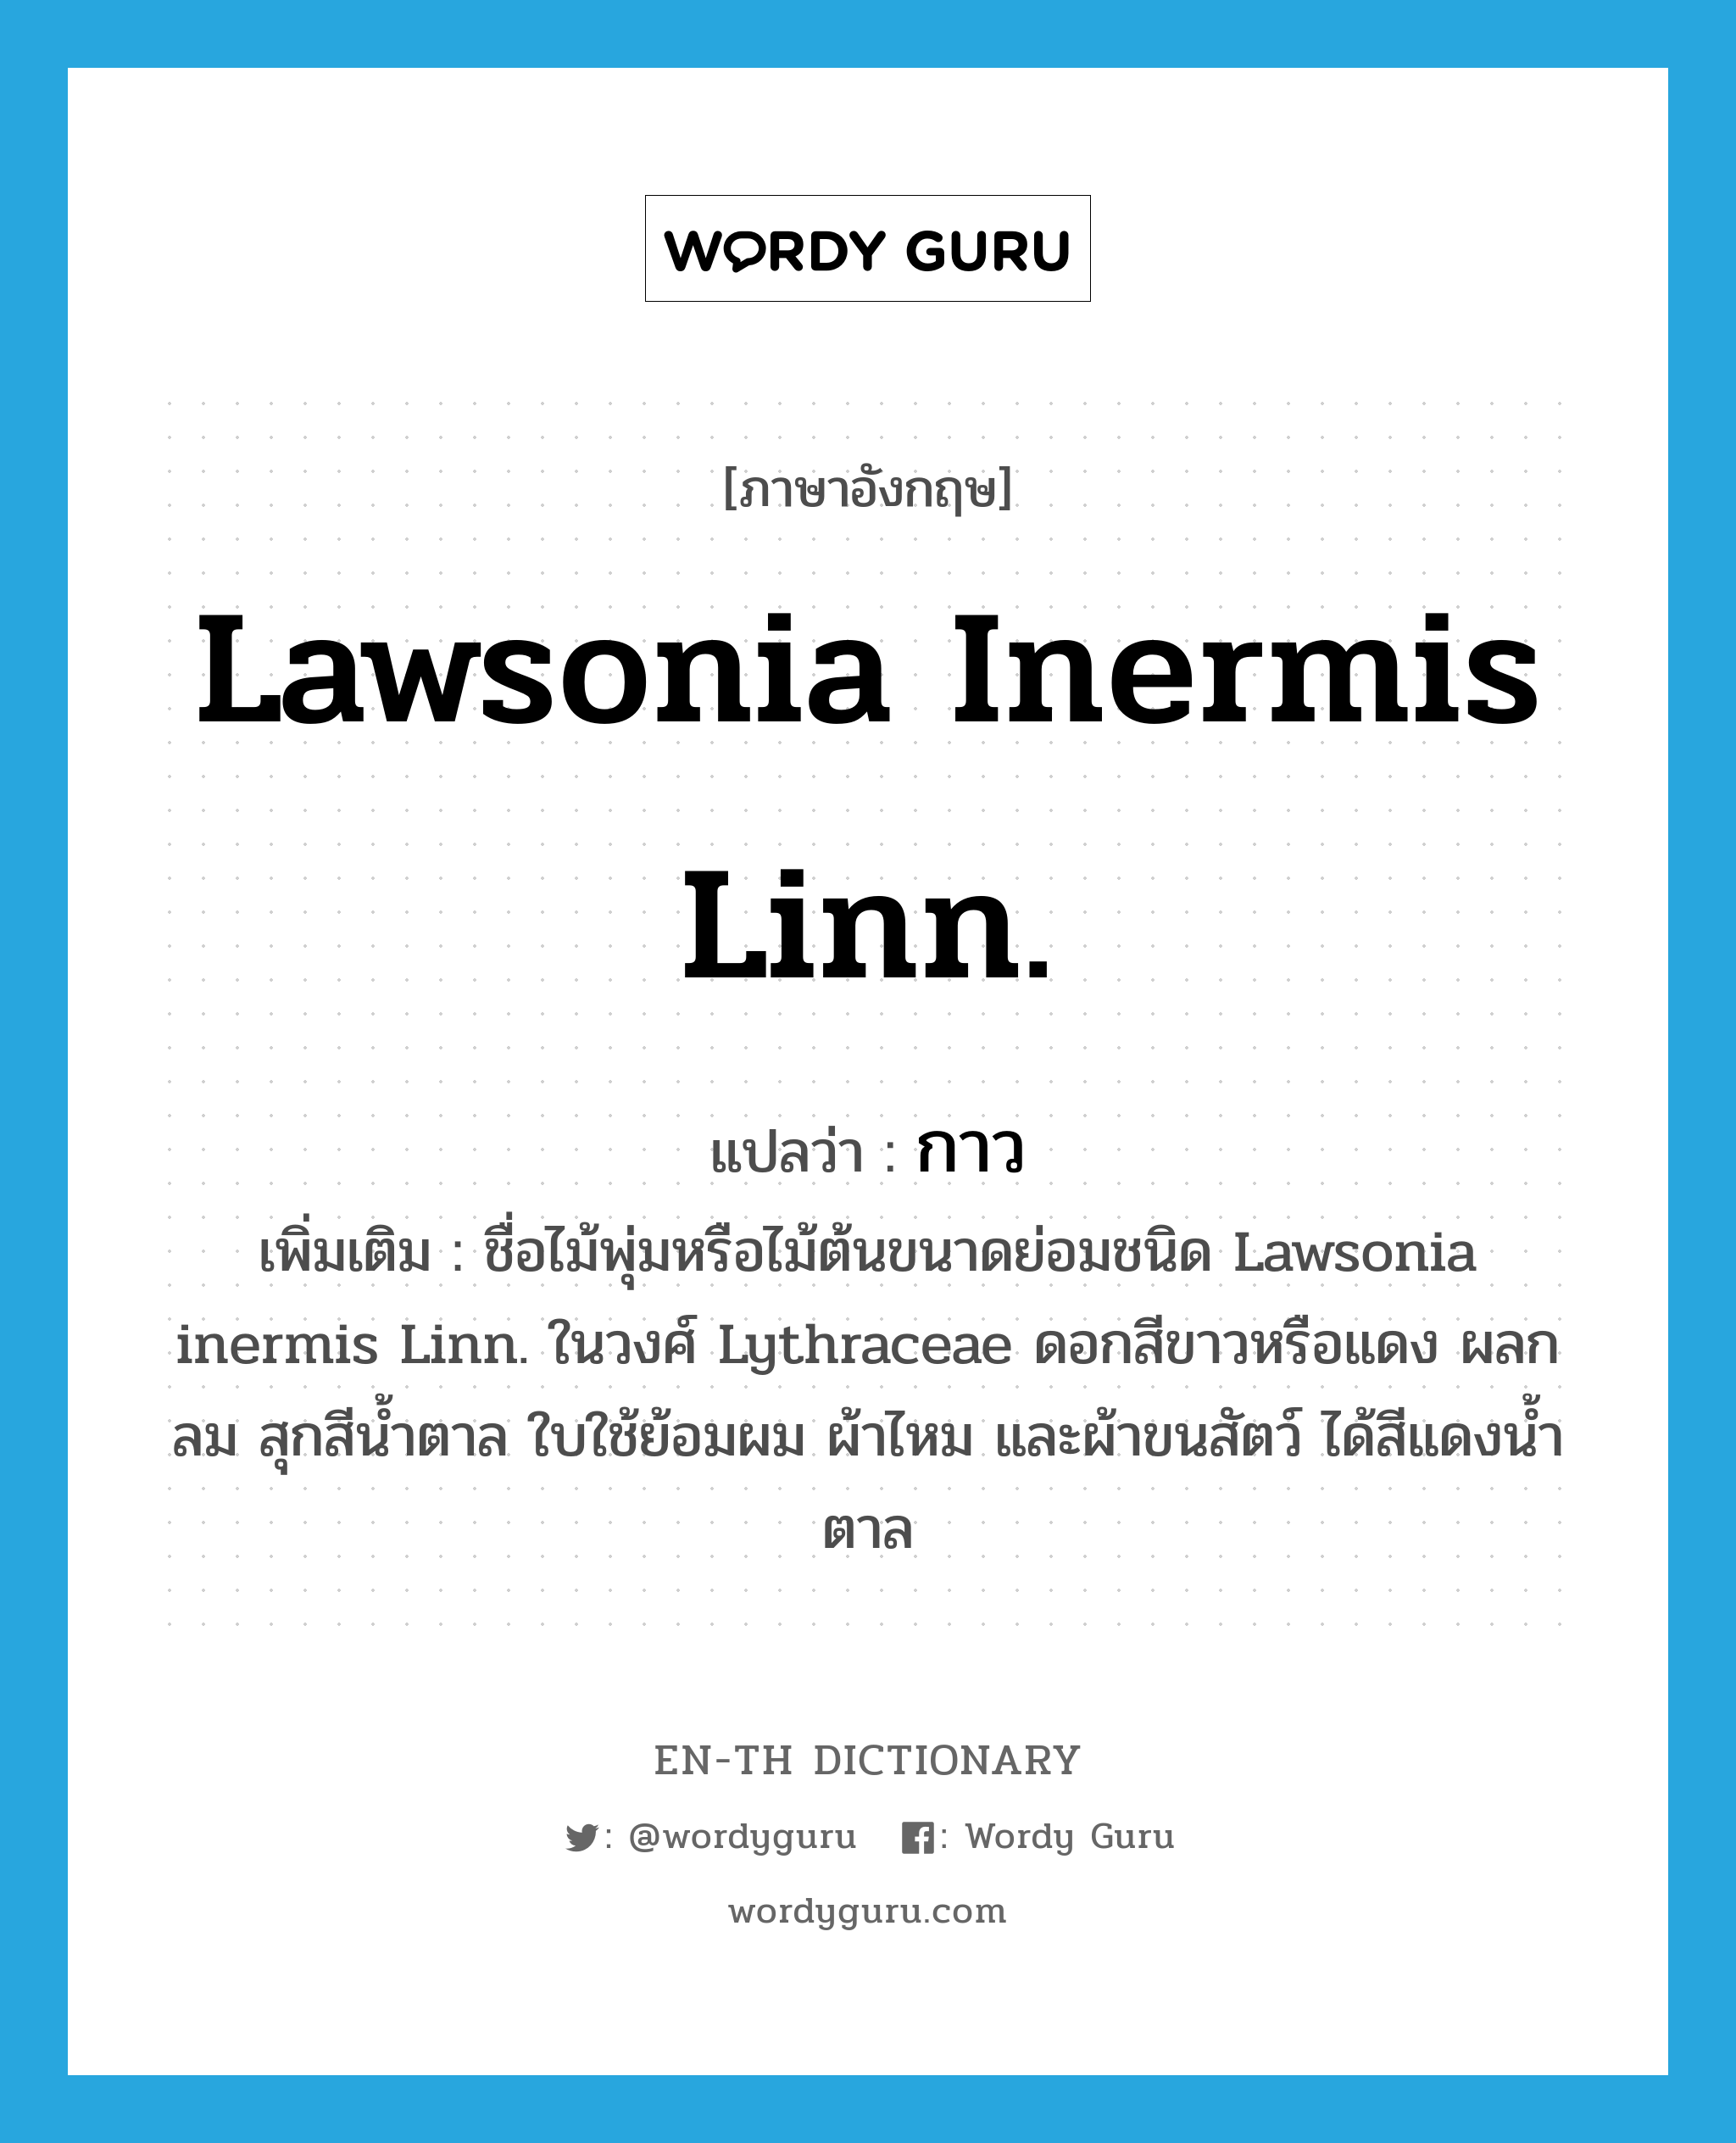 Lawsonia inermis Linn. แปลว่า?, คำศัพท์ภาษาอังกฤษ Lawsonia inermis Linn. แปลว่า กาว ประเภท N เพิ่มเติม ชื่อไม้พุ่มหรือไม้ต้นขนาดย่อมชนิด Lawsonia inermis Linn. ในวงศ์ Lythraceae ดอกสีขาวหรือแดง ผลกลม สุกสีน้ำตาล ใบใช้ย้อมผม ผ้าไหม และผ้าขนสัตว์ ได้สีแดงน้ำตาล หมวด N